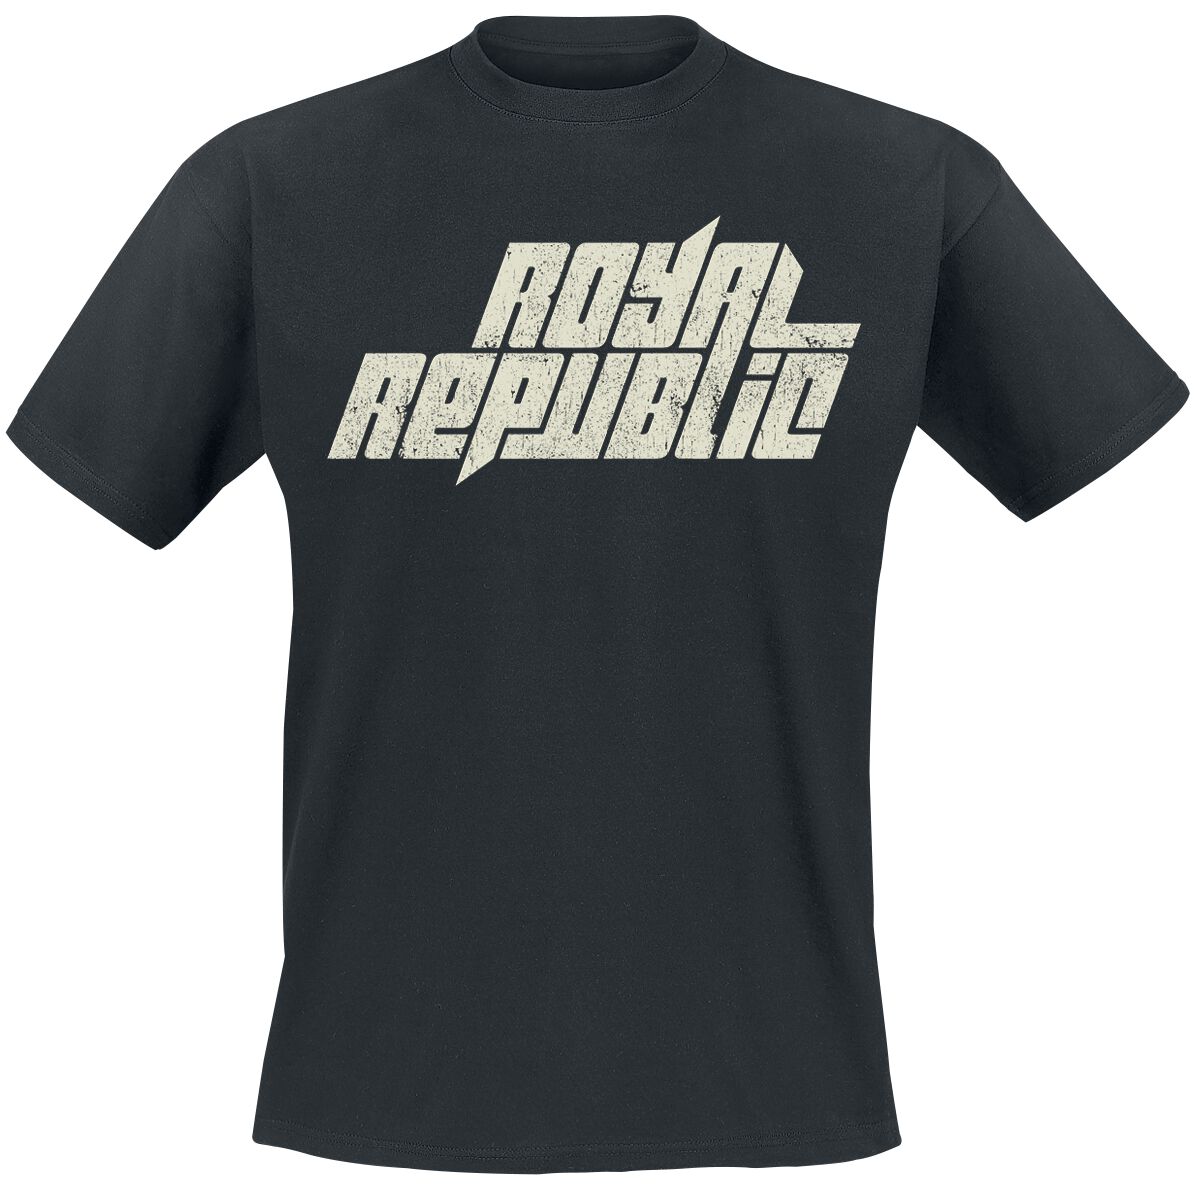 Royal Republic T-Shirt - Vintage Logo - S bis 5XL - für Männer - Größe 3XL - schwarz  - Lizenziertes Merchandise!